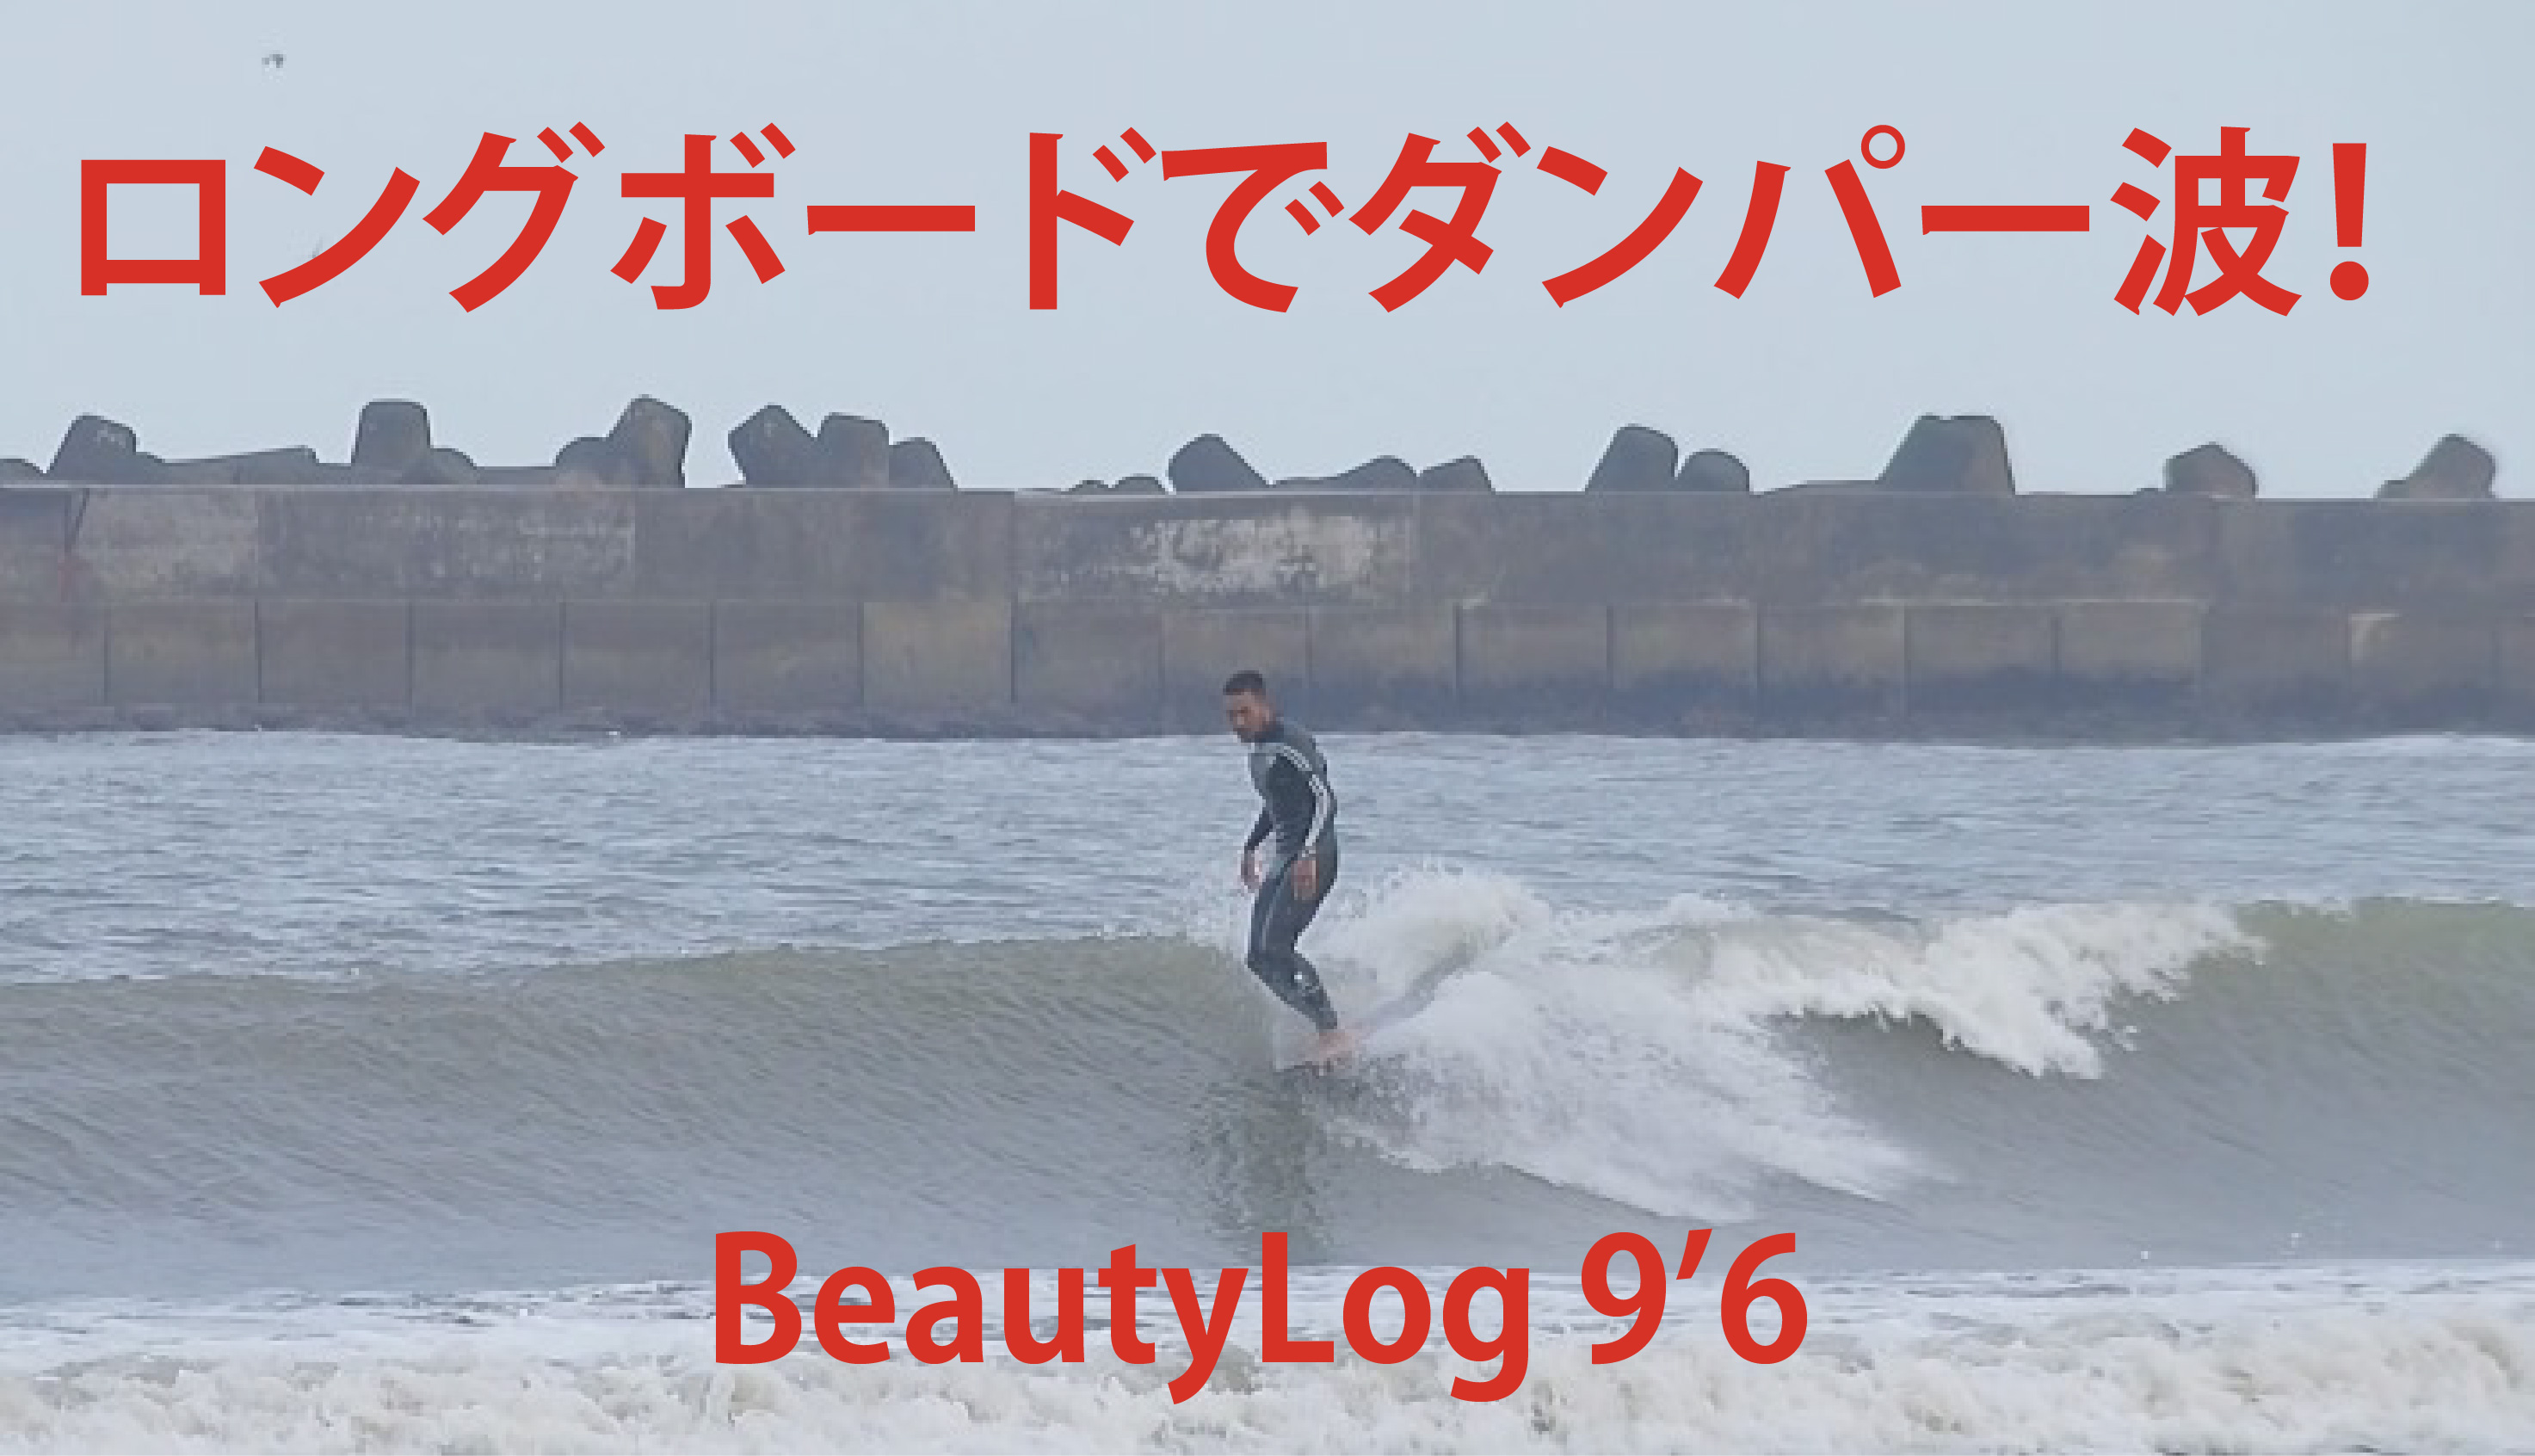 【サーフィン動画】ダンパー波でもシングルフィンロングボード【beautylog】9’6 - 『 REBEL 』 プロサーファー市東重明のブログ